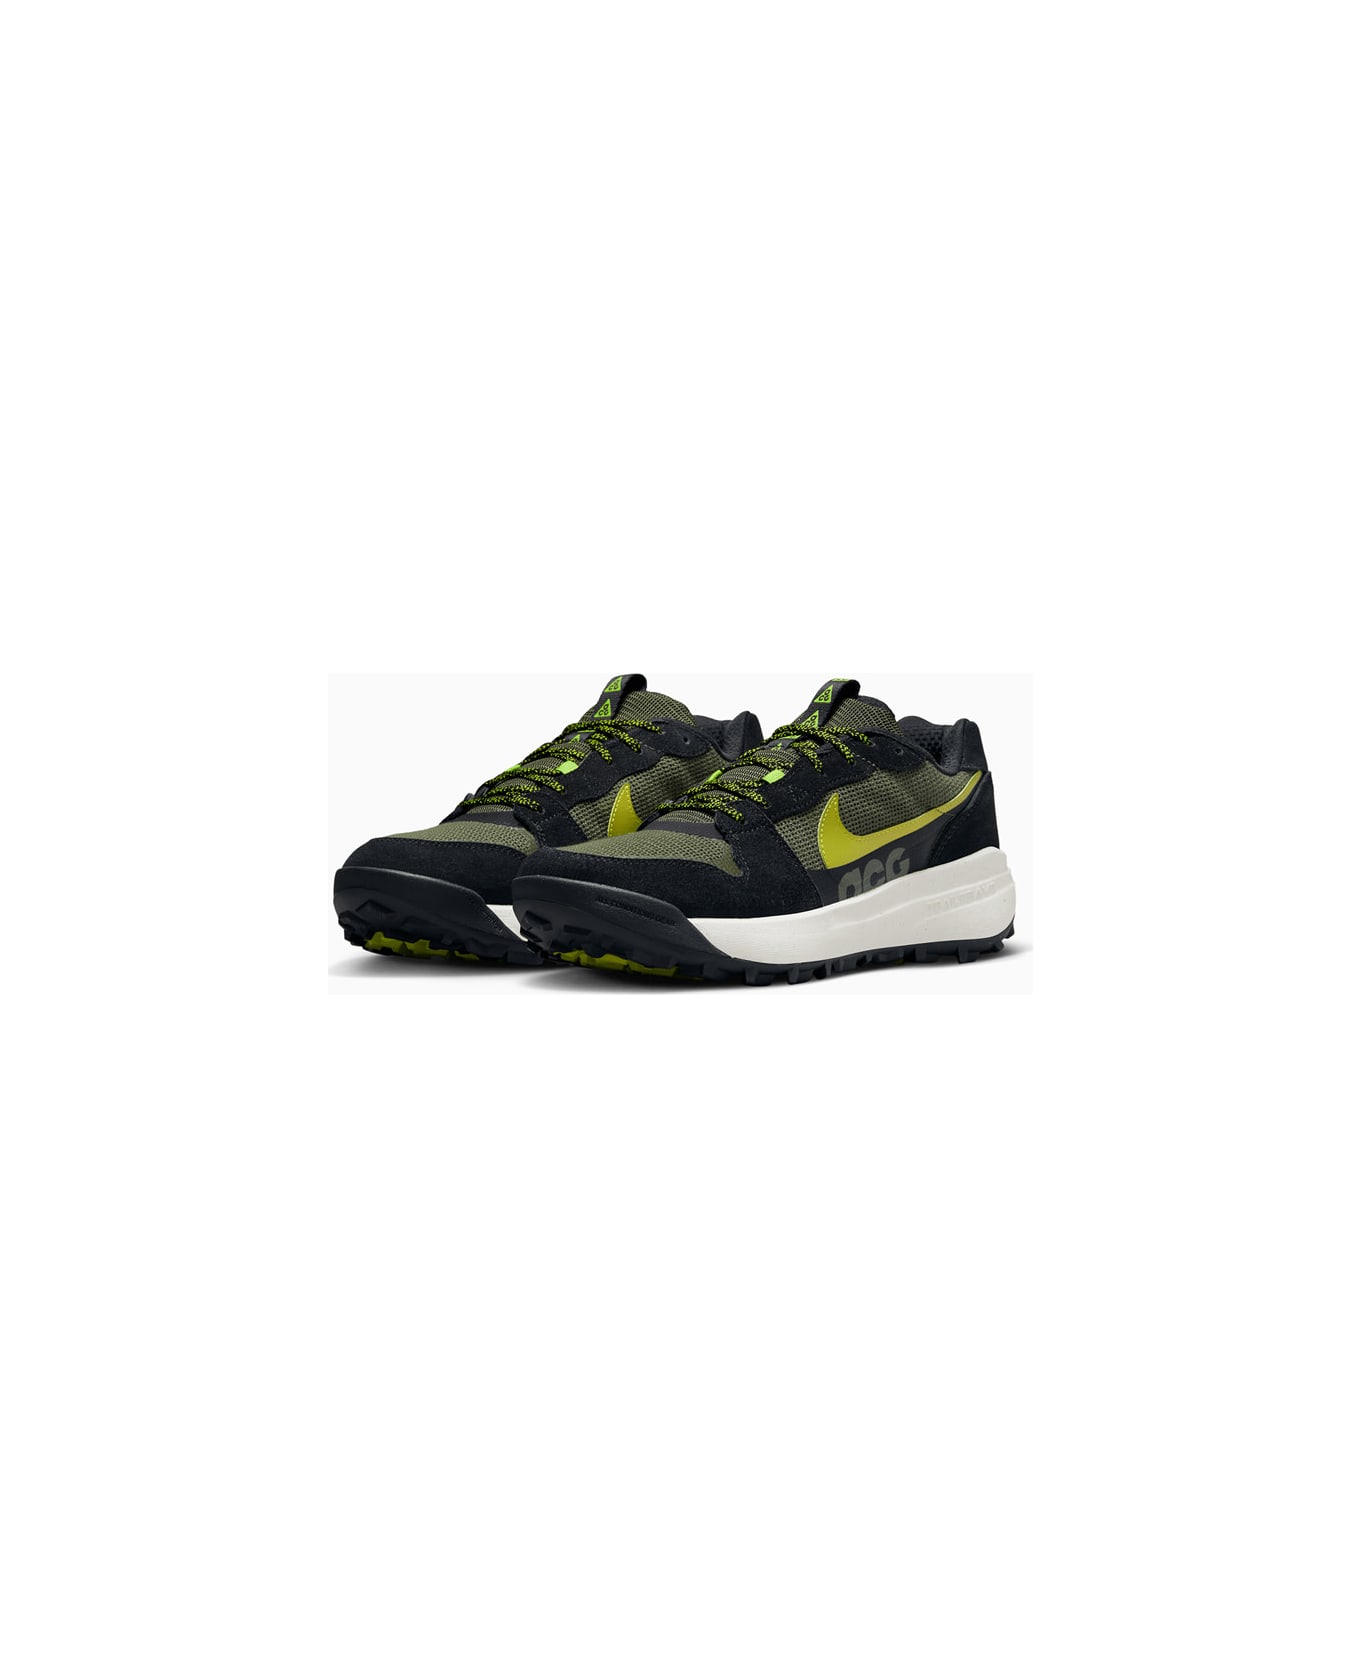 Nike Acg Lowcate Sneakers Dm8019-300 - Green